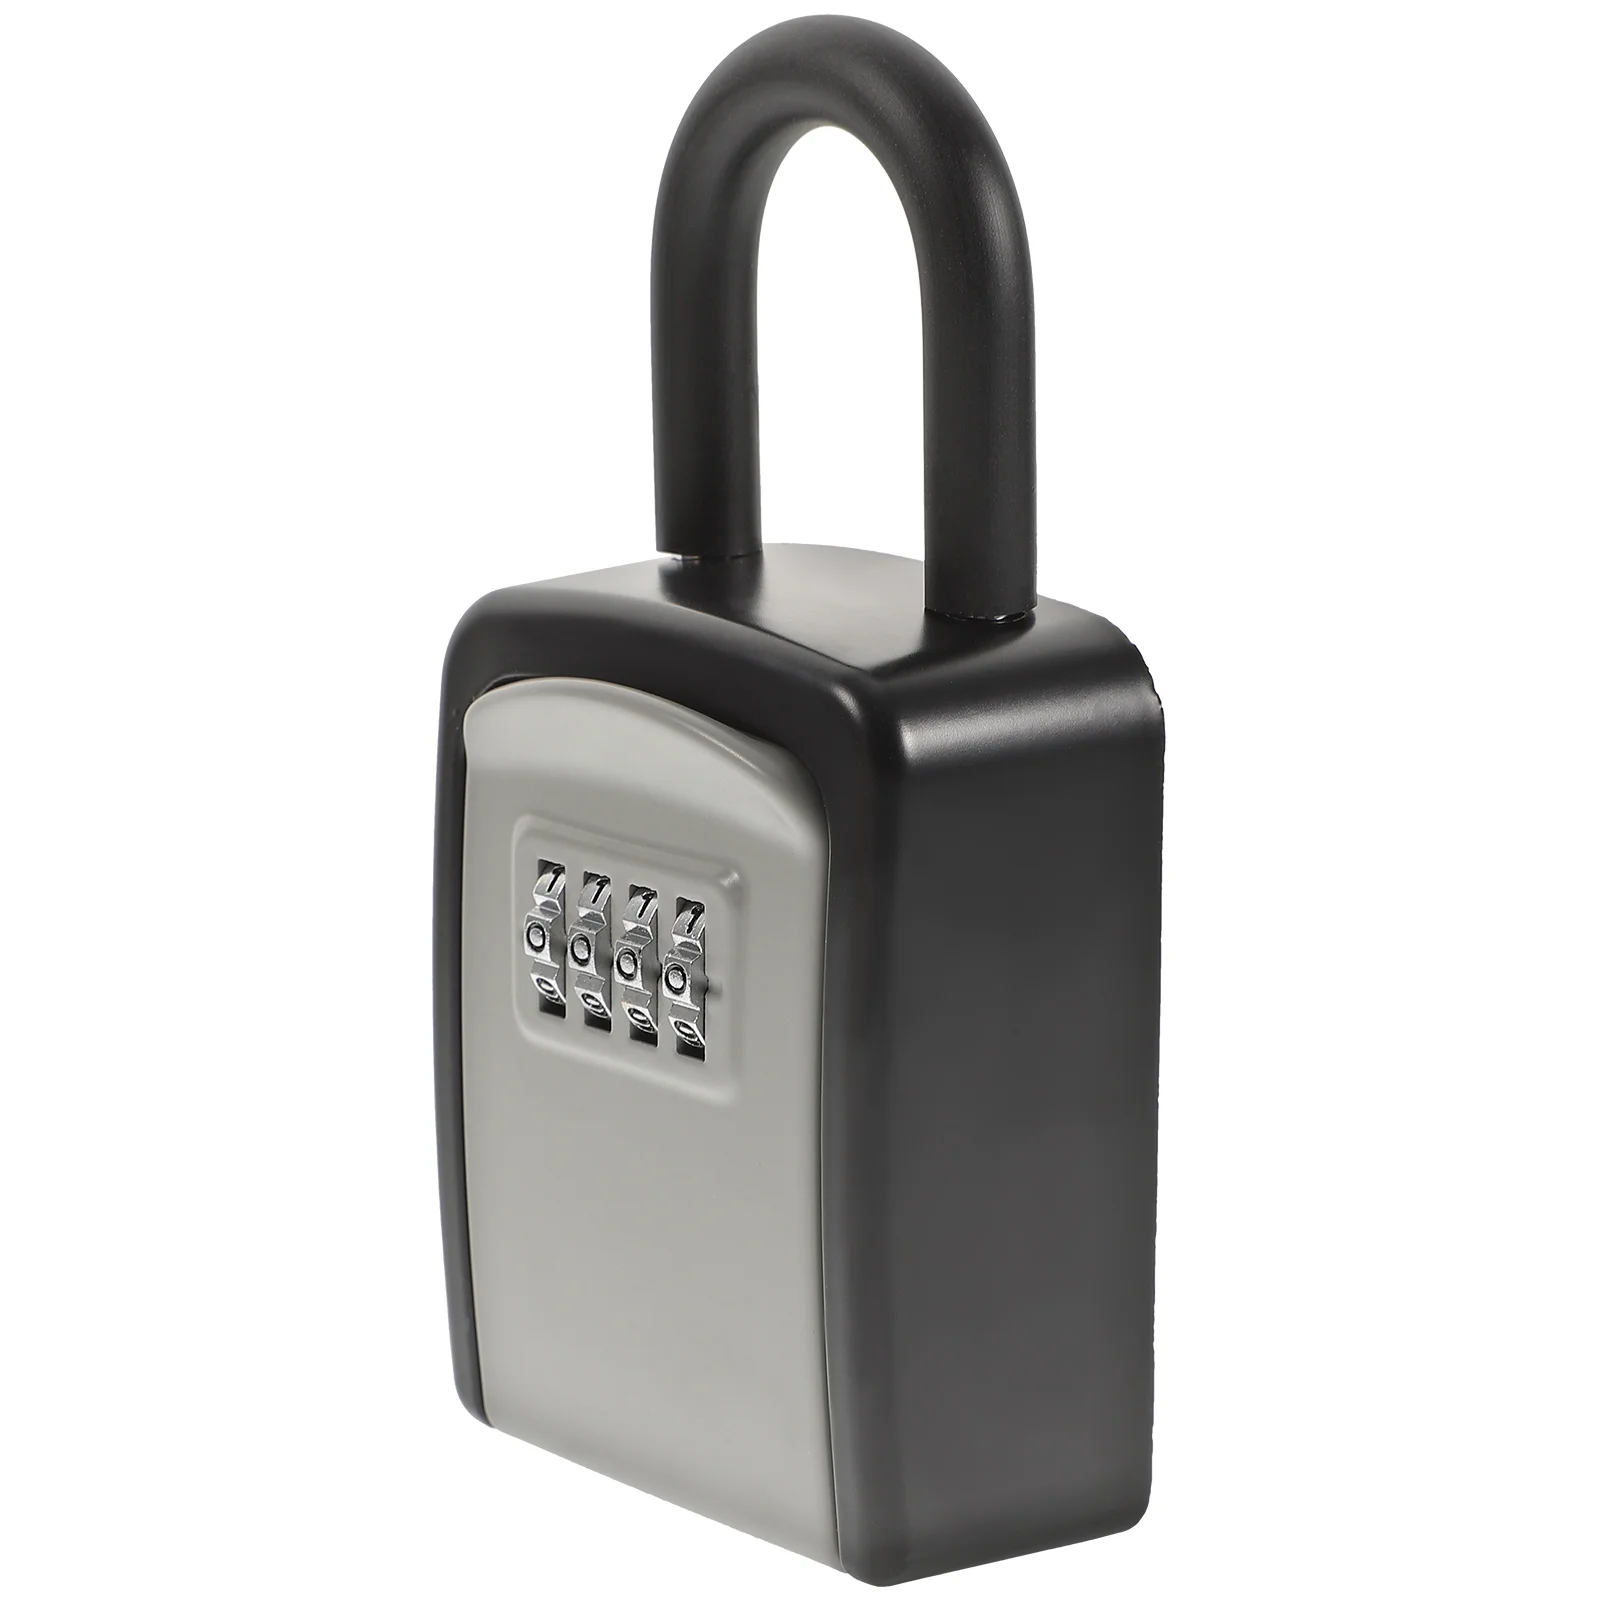 Погодозащищенный замок для ключей, кодовый Комбинированный Замок, уличный ящик для хранения ключей 4 значный комбинированный замок для хранения ключей коробка для ключей настенный сейф для ключей погодозащищенный ящик для дома и улицы